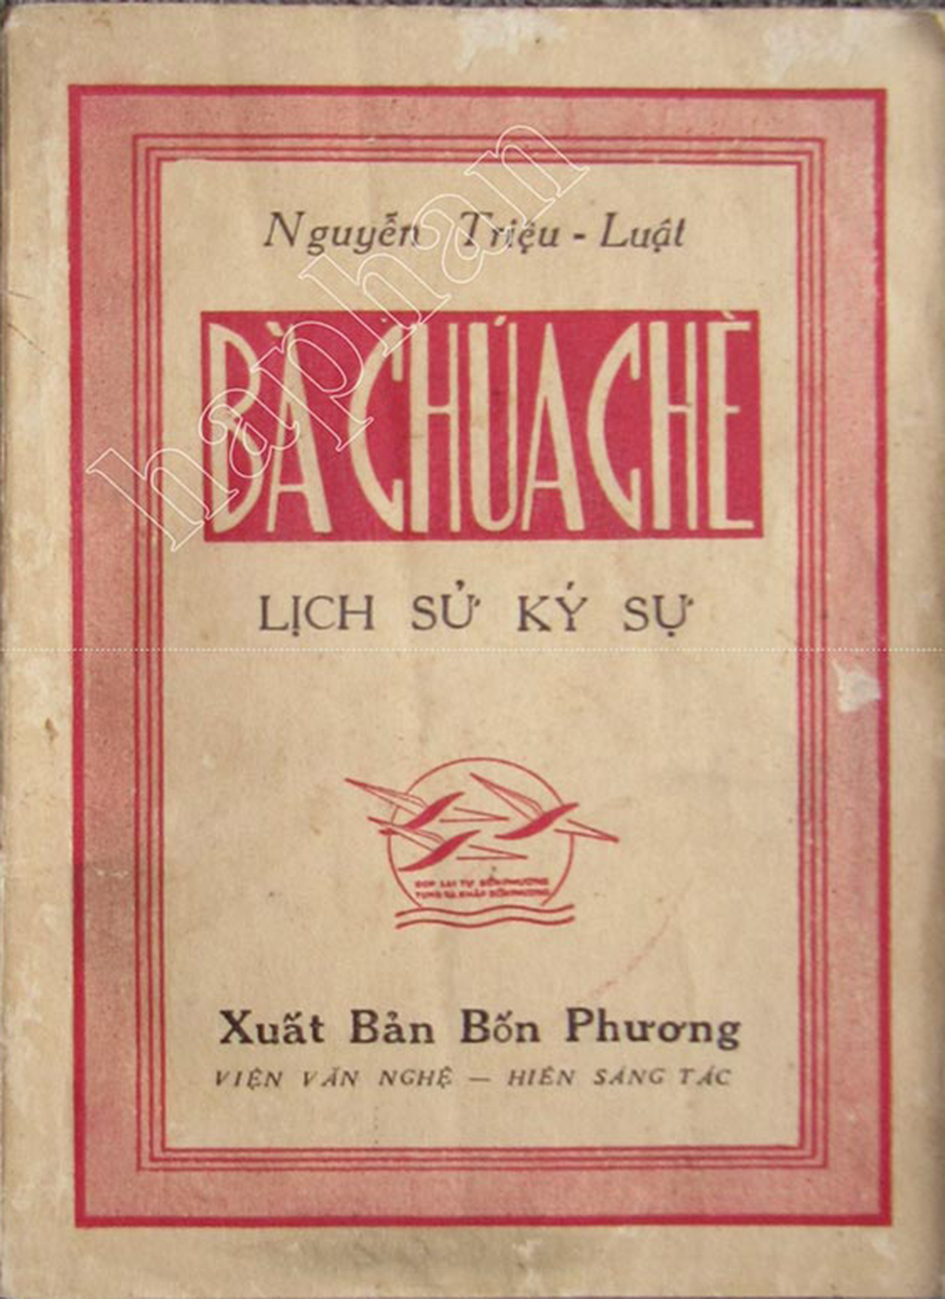 Ba Chua Che